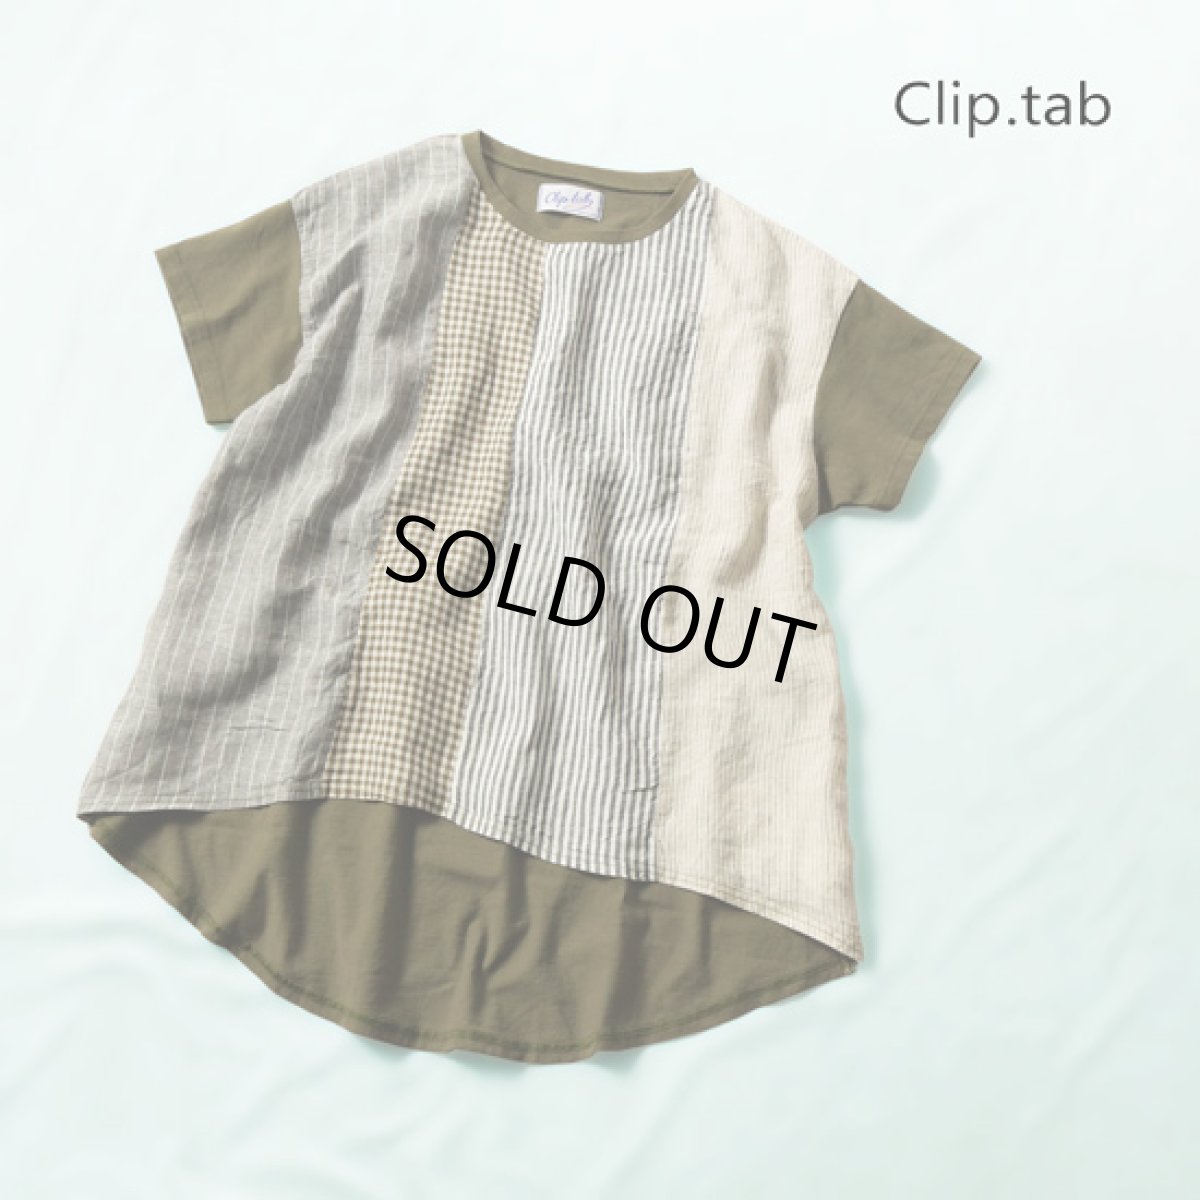 画像1: Clip.tab / クリップタブ チャンピオン天竺 先染めパネルTシャツ (1)